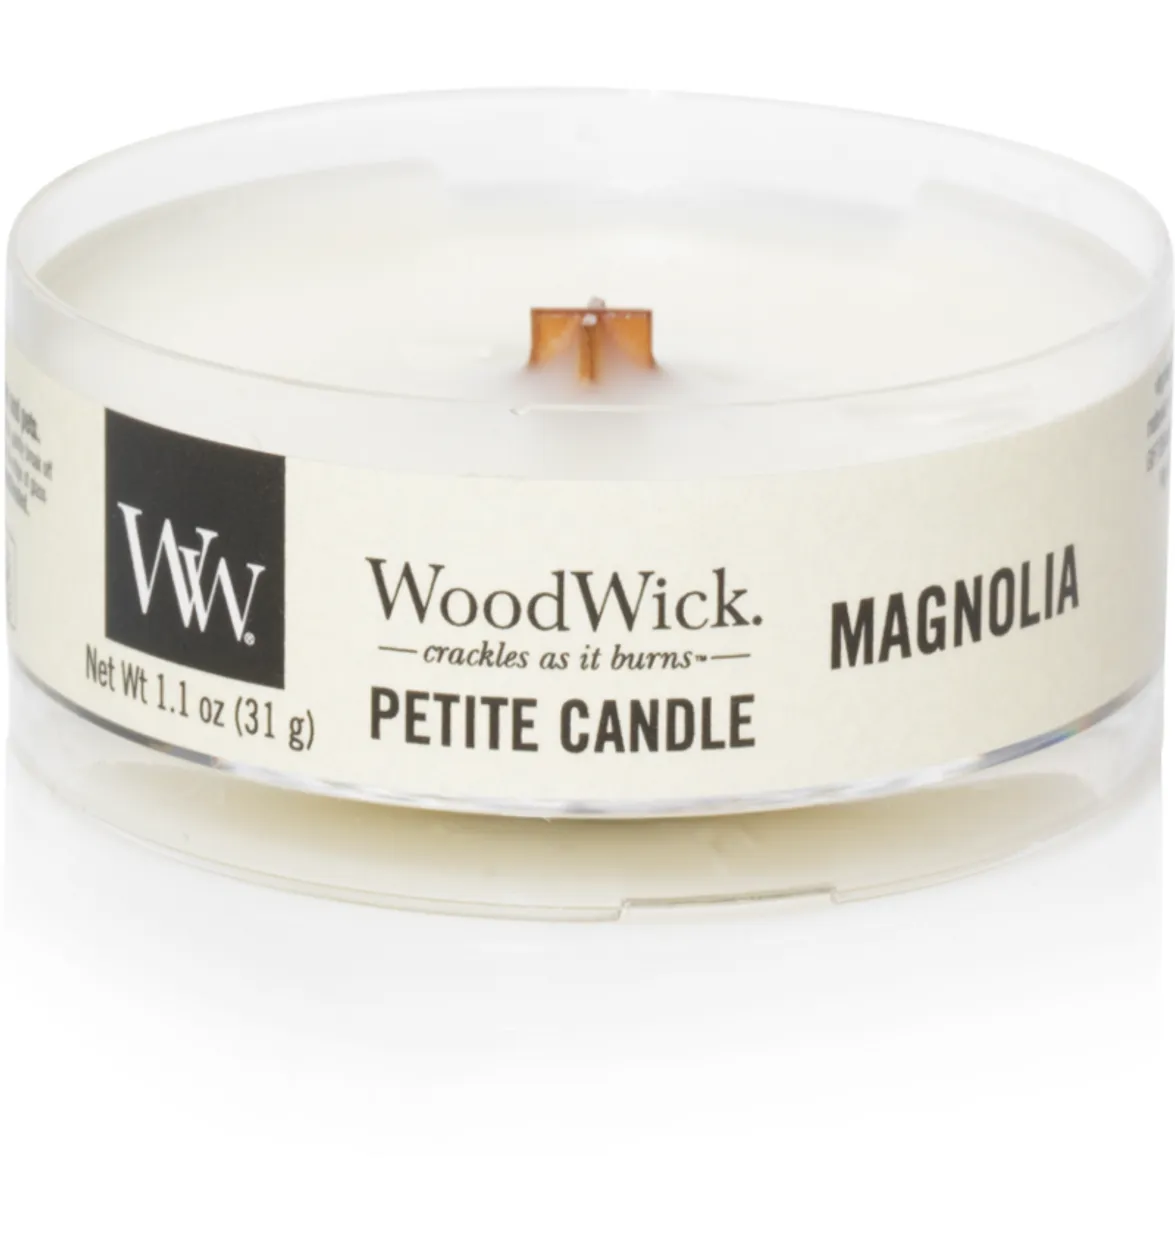 WW Magnolia Petite Candle